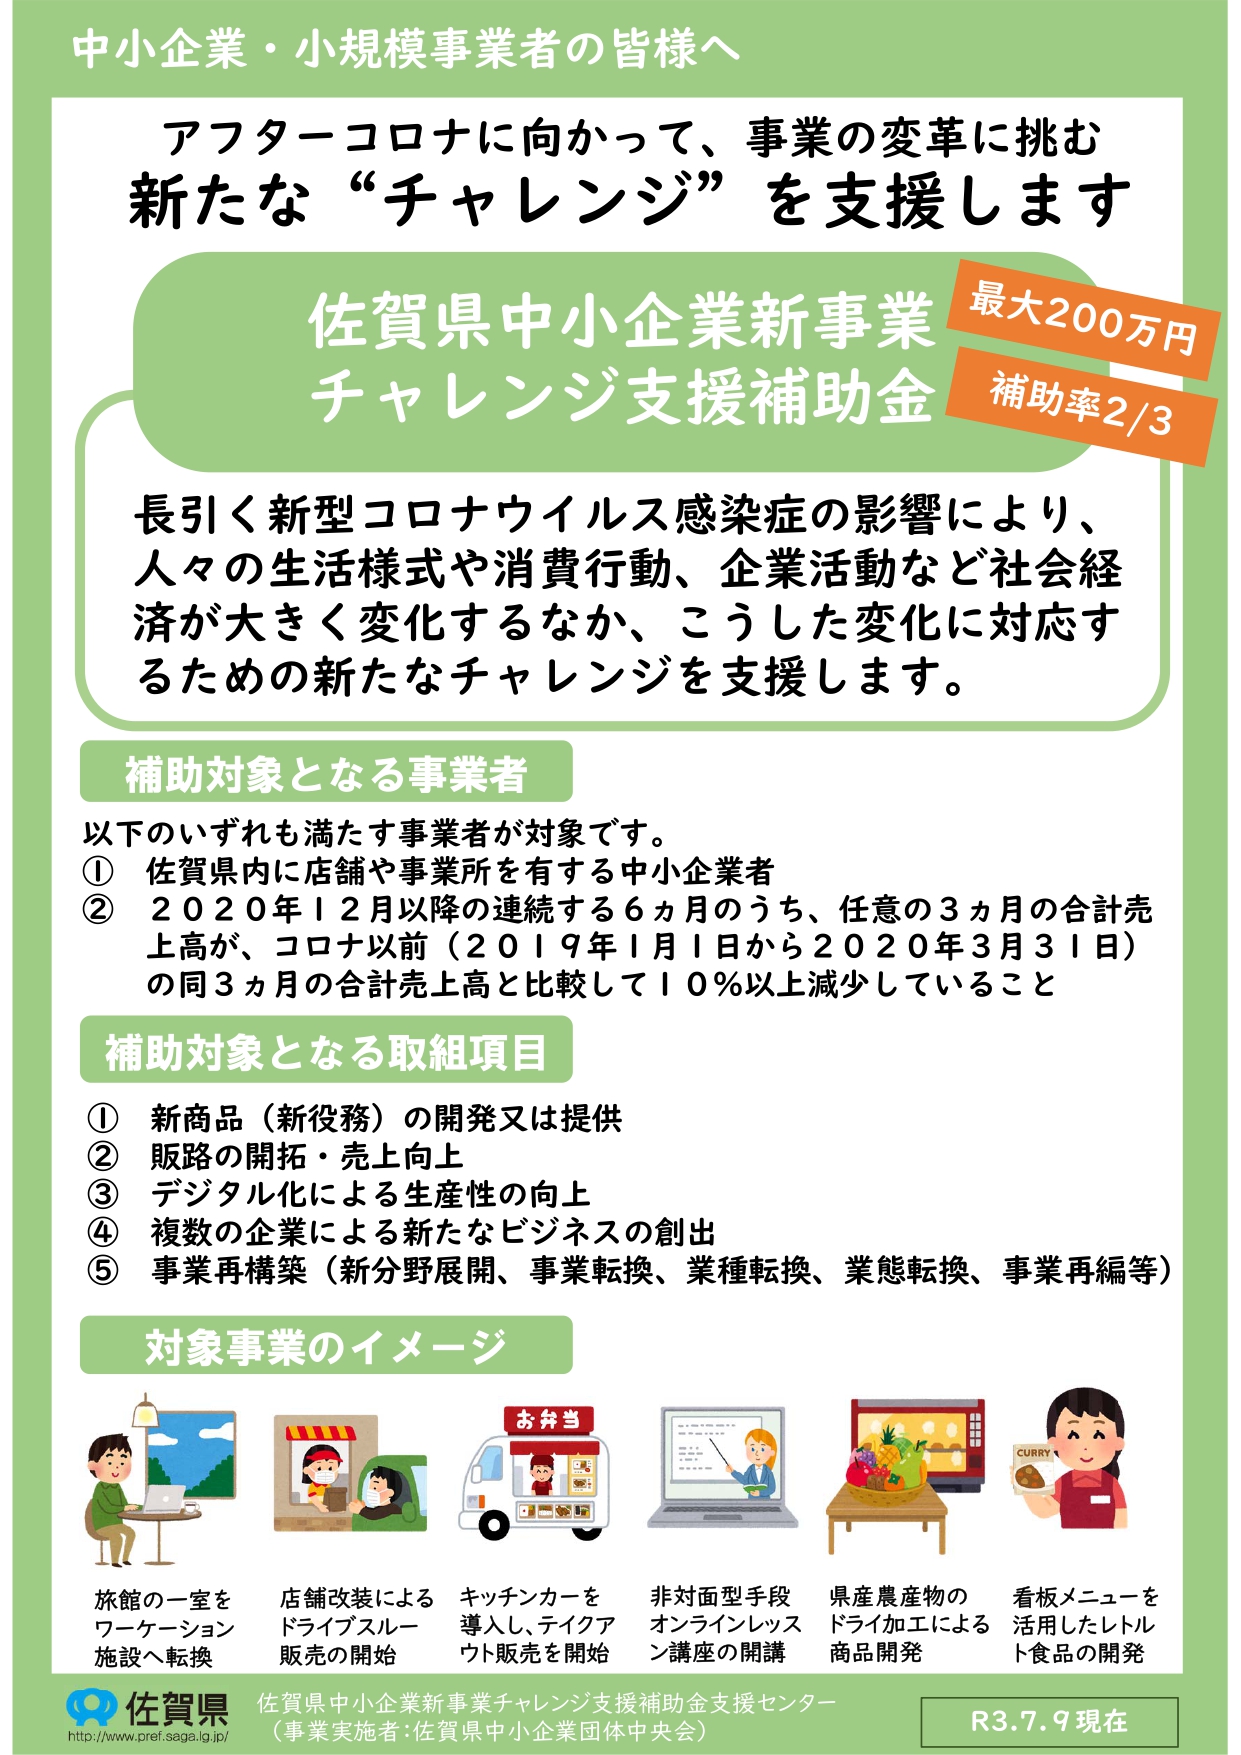 佐賀県中小企業新事業チャレンジ支援補助金 第２回公募開始のお知らせ 嬉野市商工会